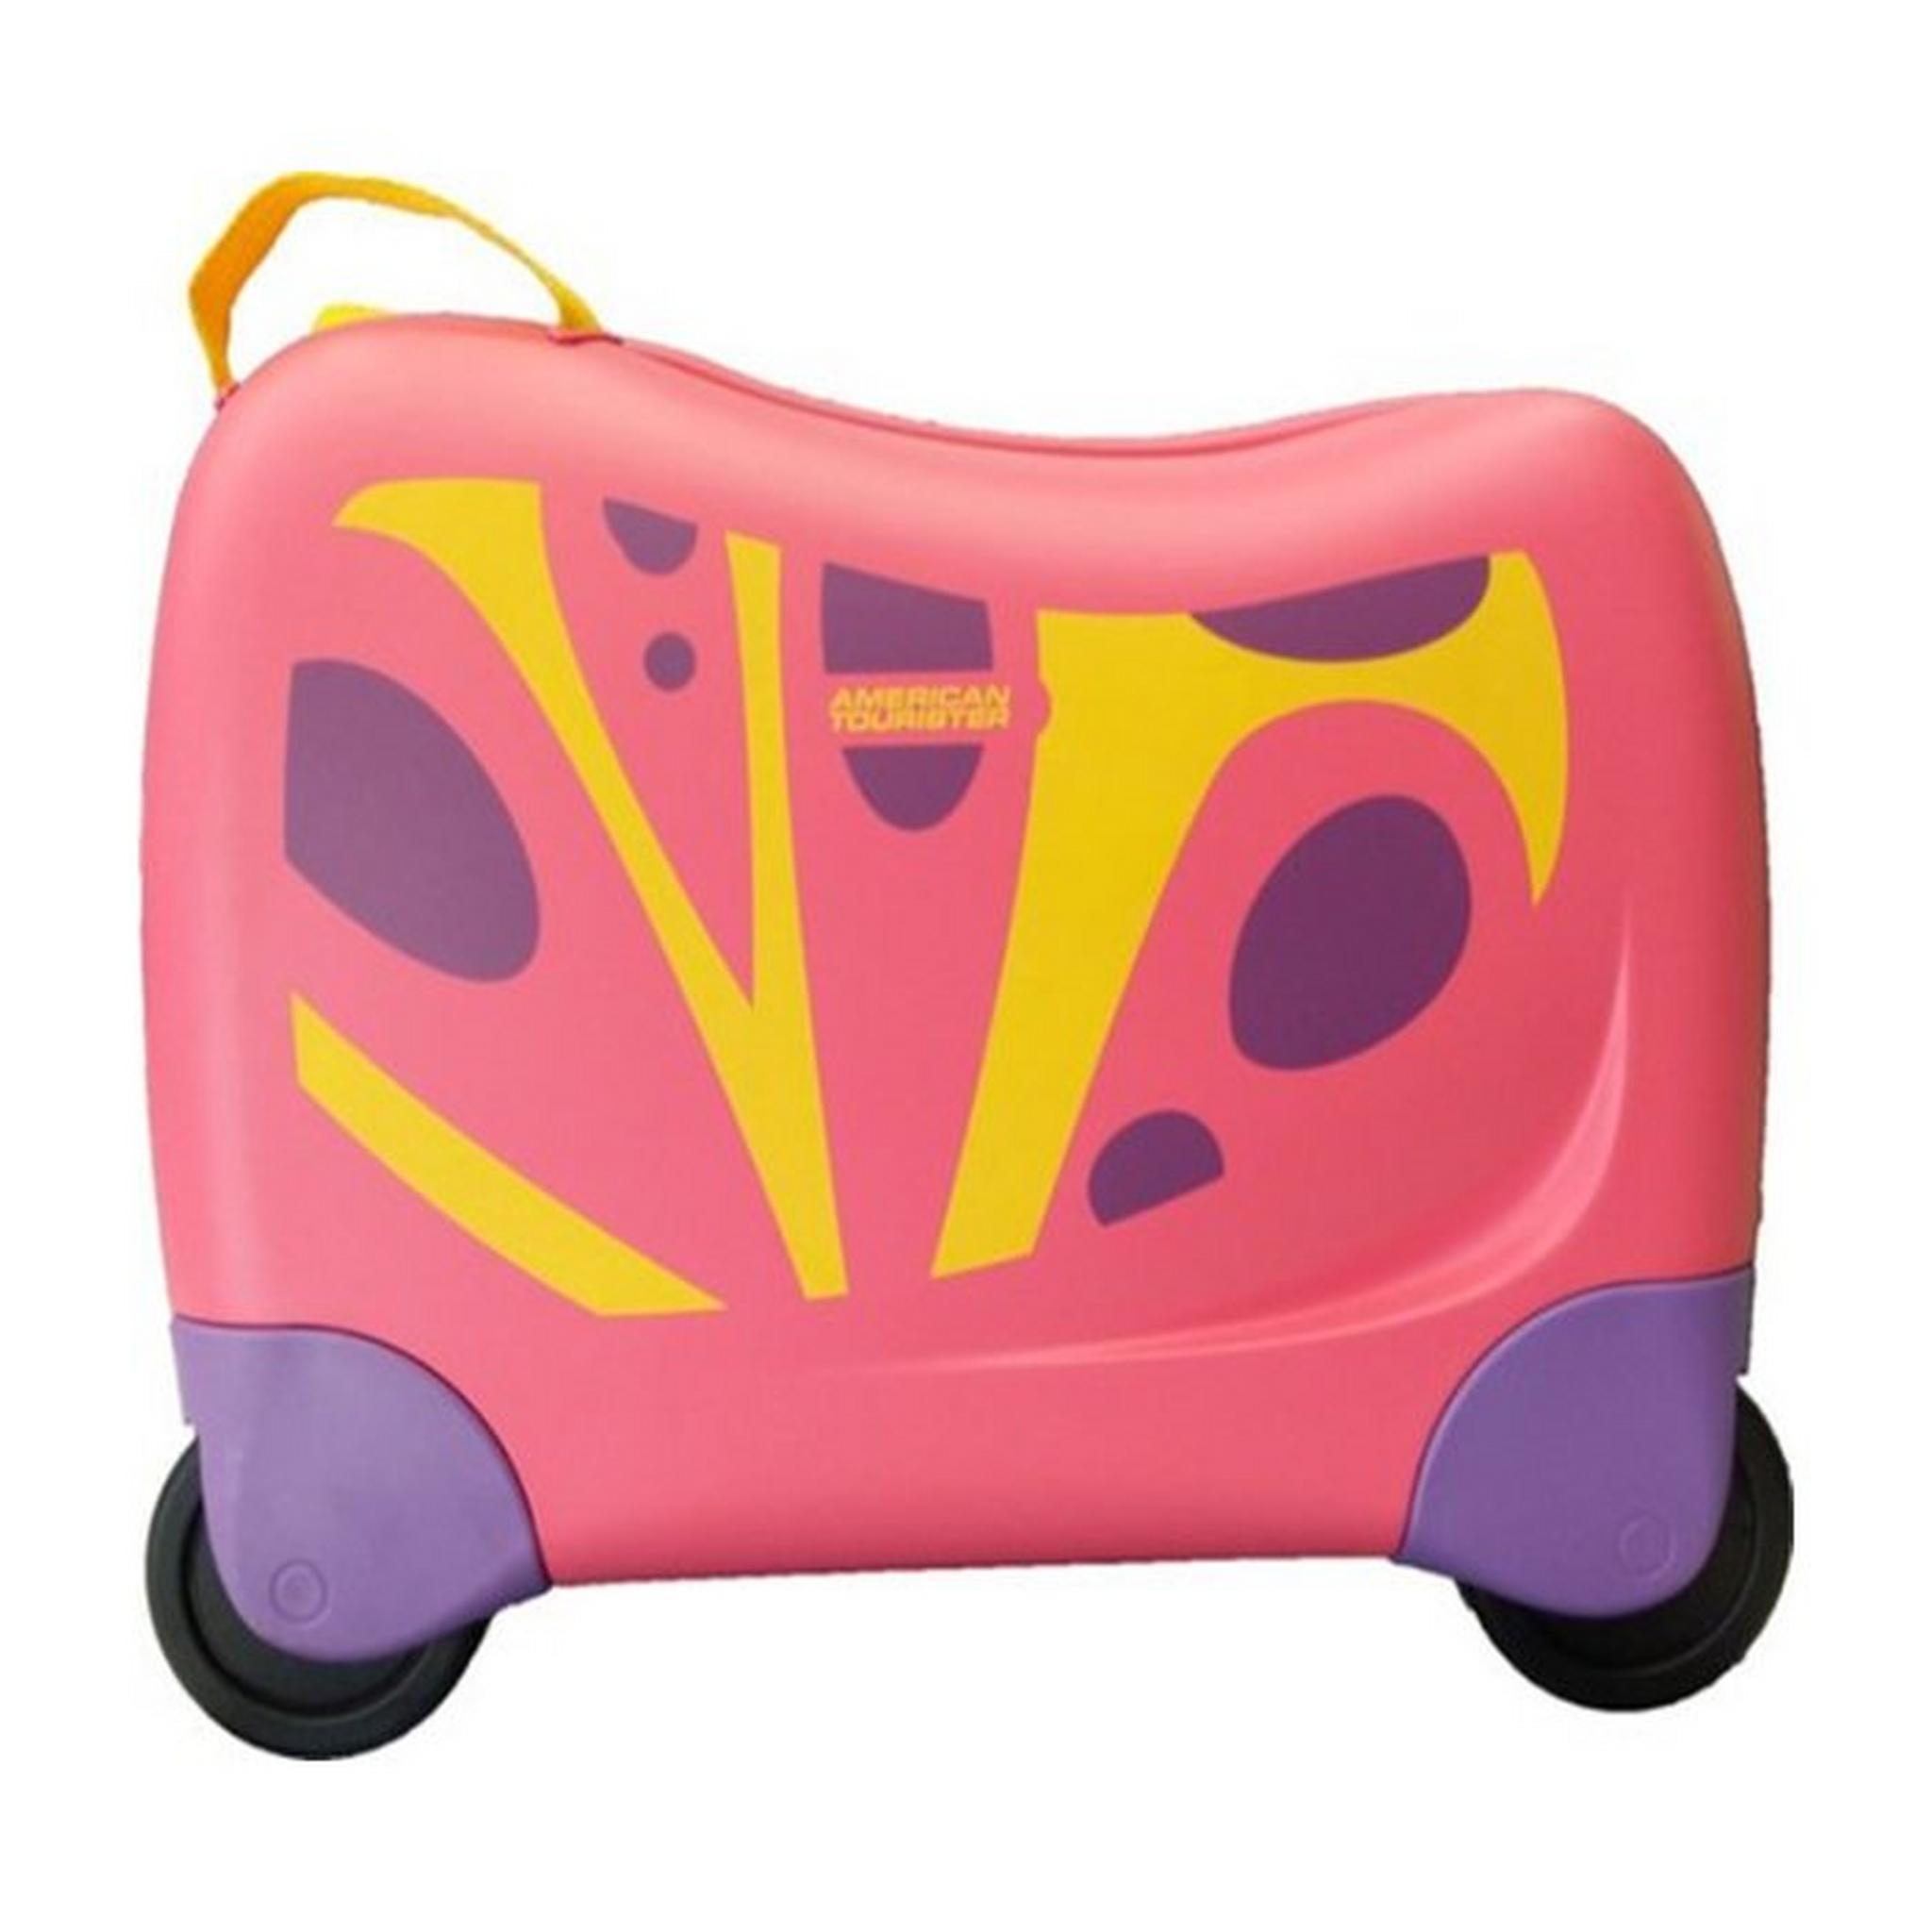 حقيبة سفر اطفال سكيتل من امريكان توريستر، سعة 25 لتر، FH0X90411 - فراشة وردية